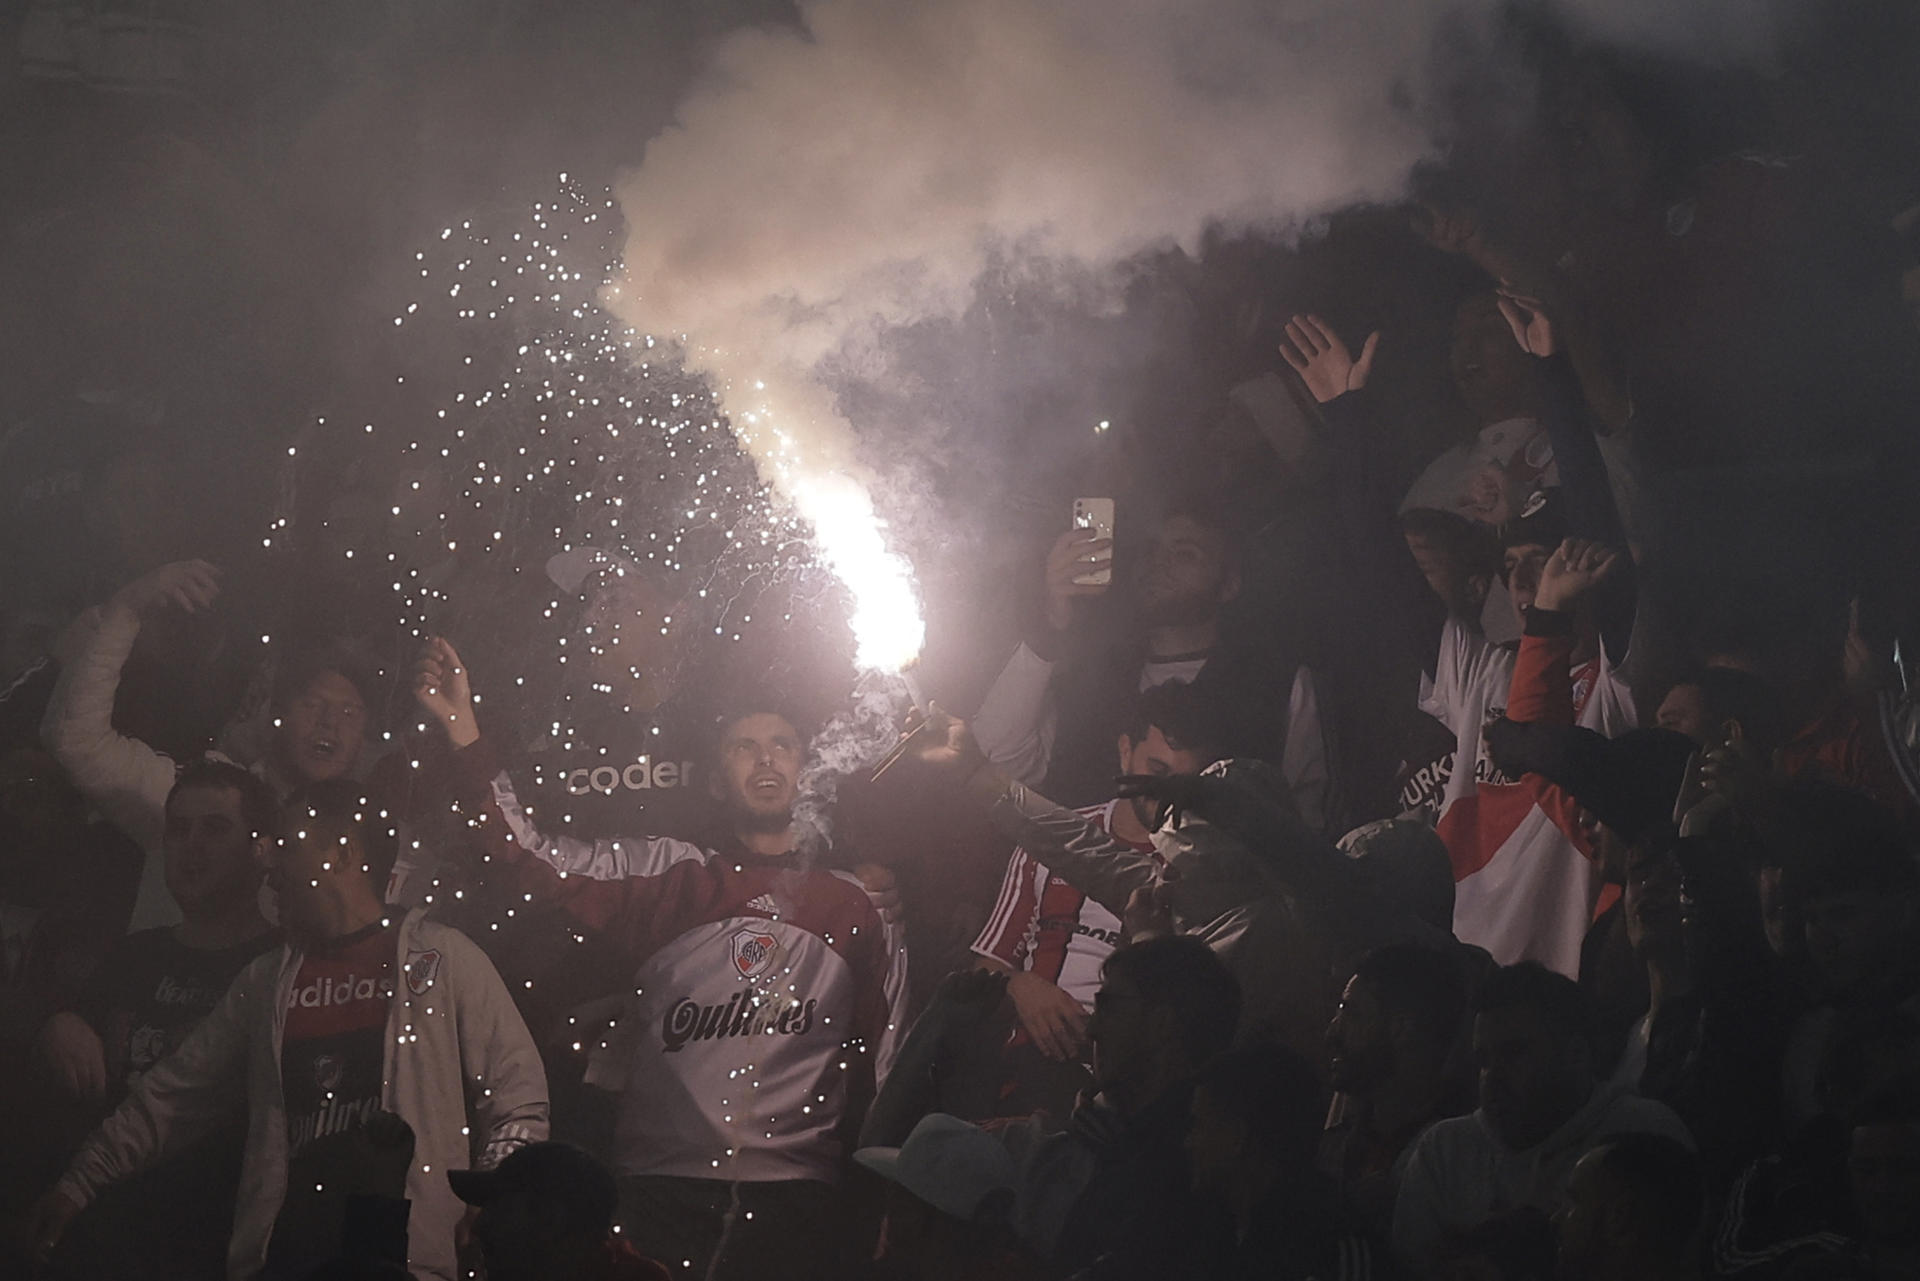 Aficionados de River Plate apoyan al equipo , en un partido de la fase de grupos de la Copa Libertadores entre River Plate y Fluminense, en una fotografía de archivo. EFE/Juan I. Roncoroni